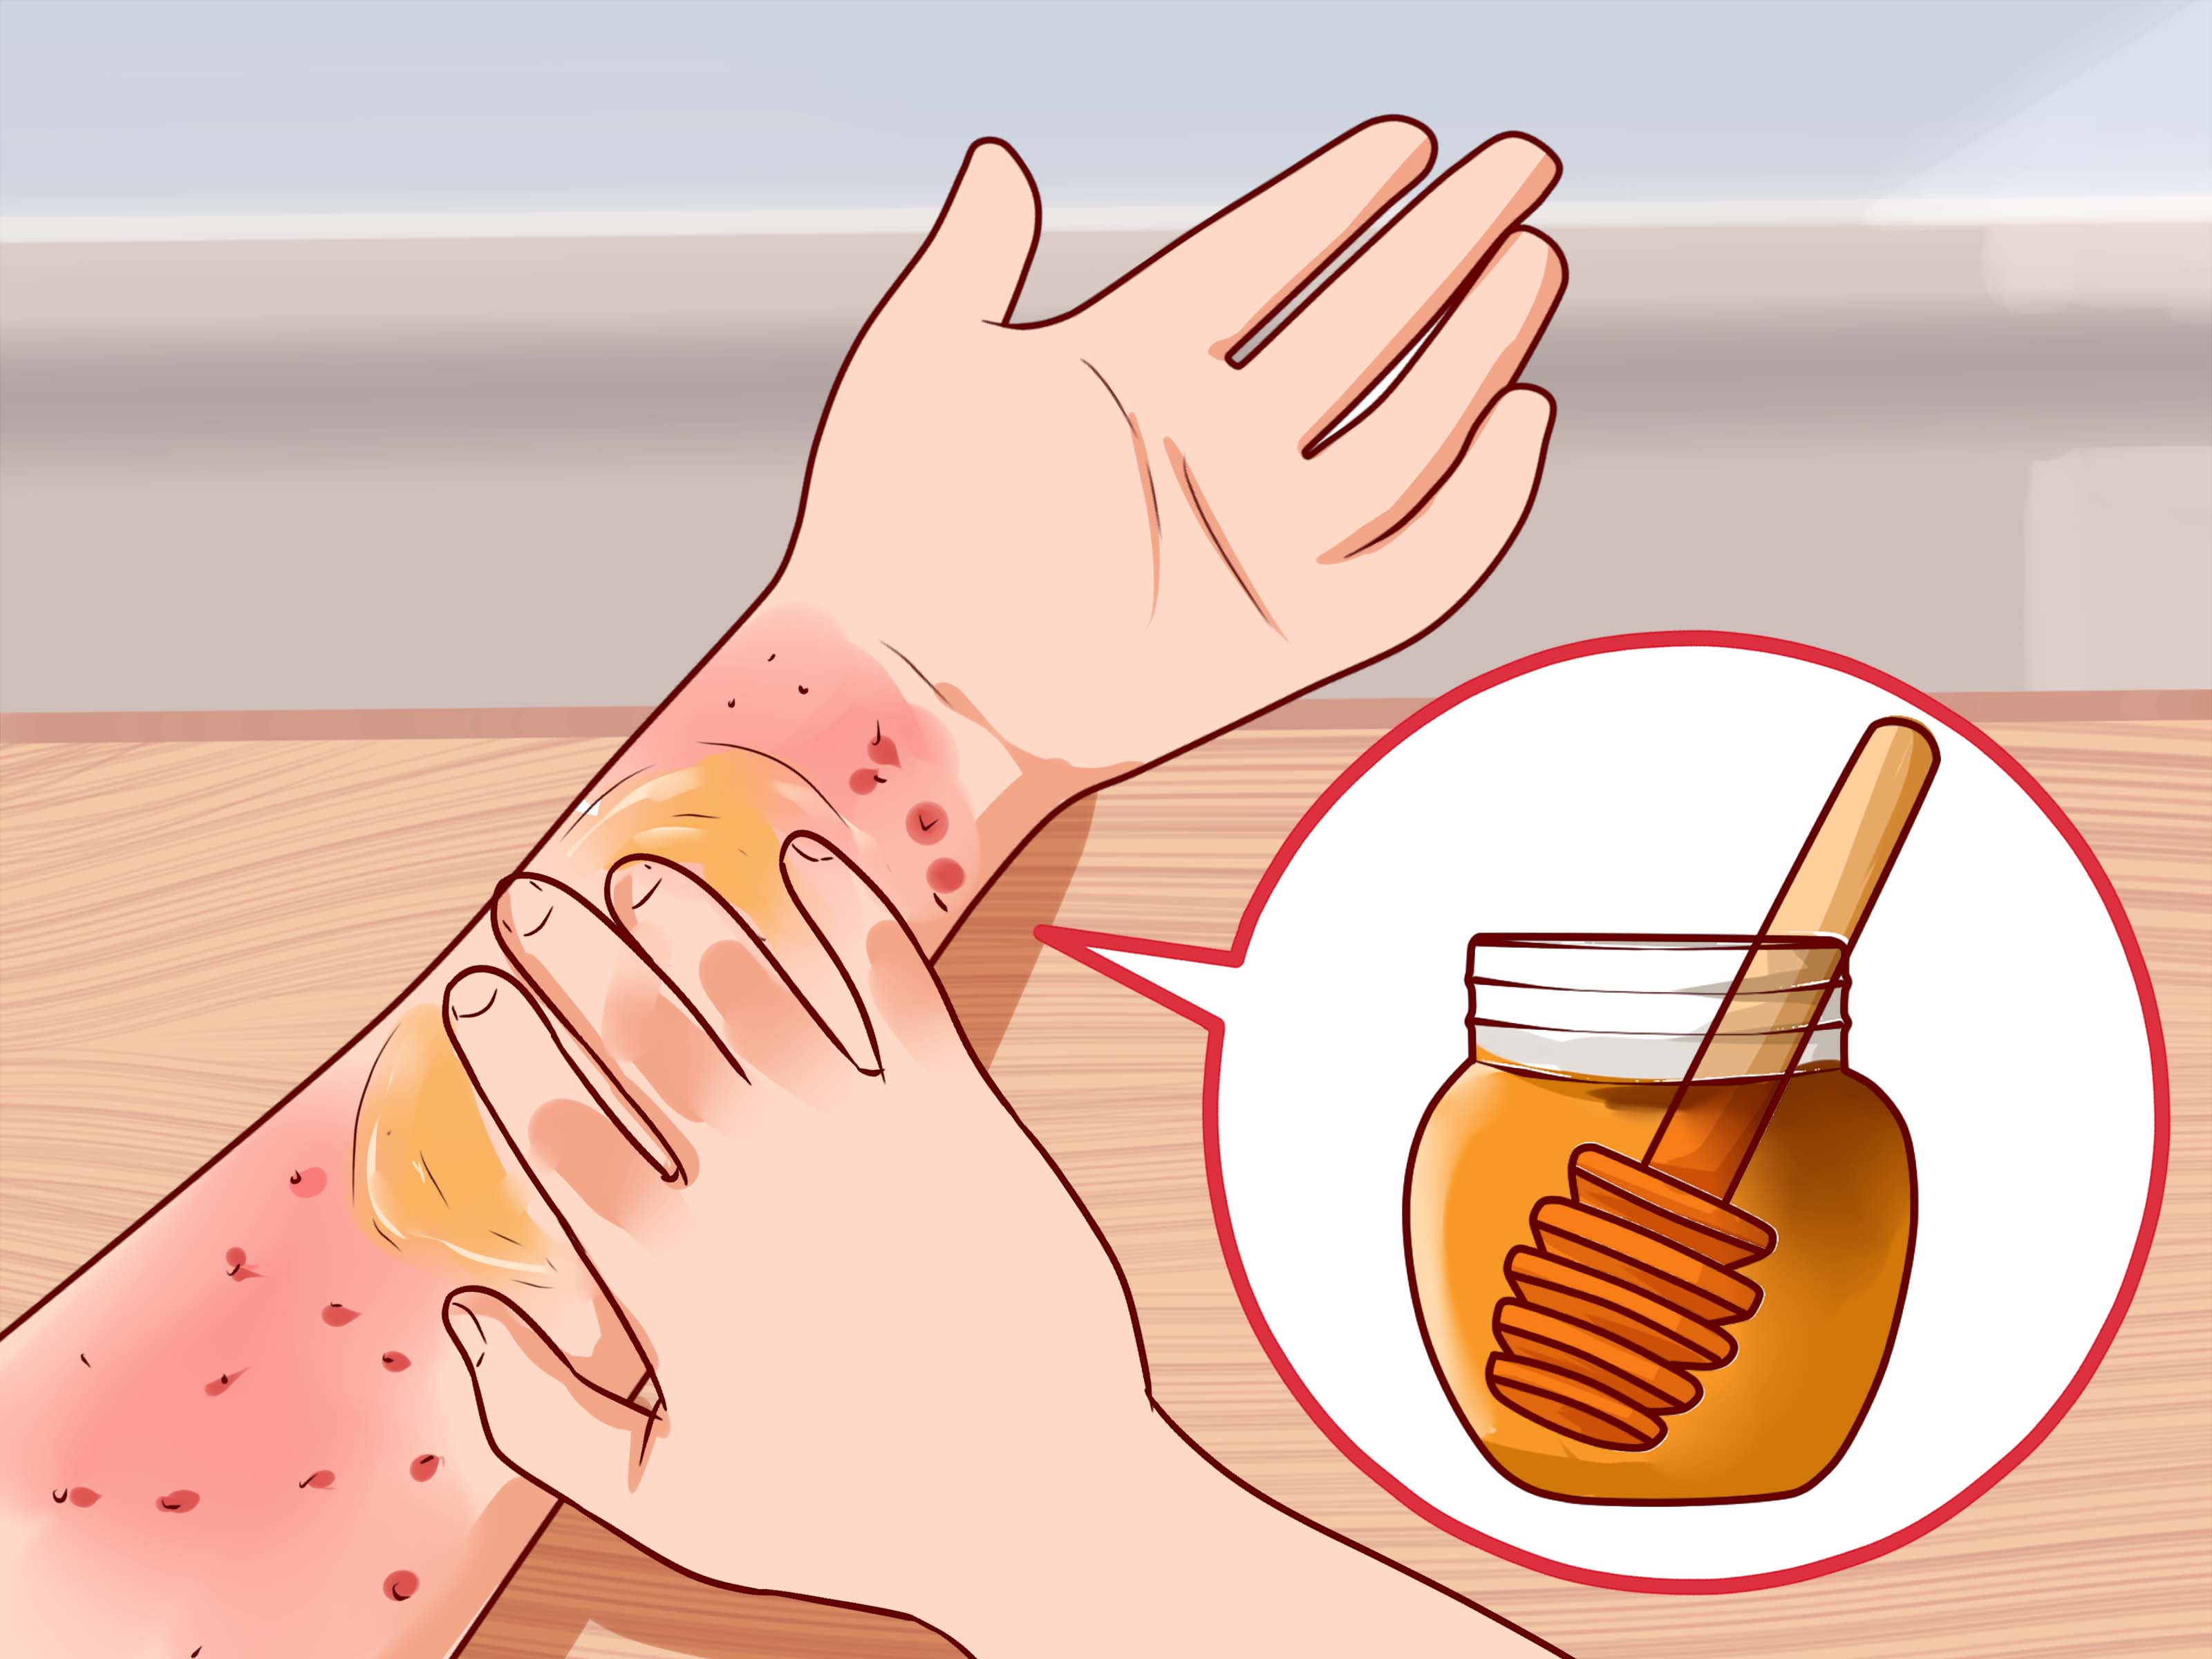 فوائد العسل للجروح